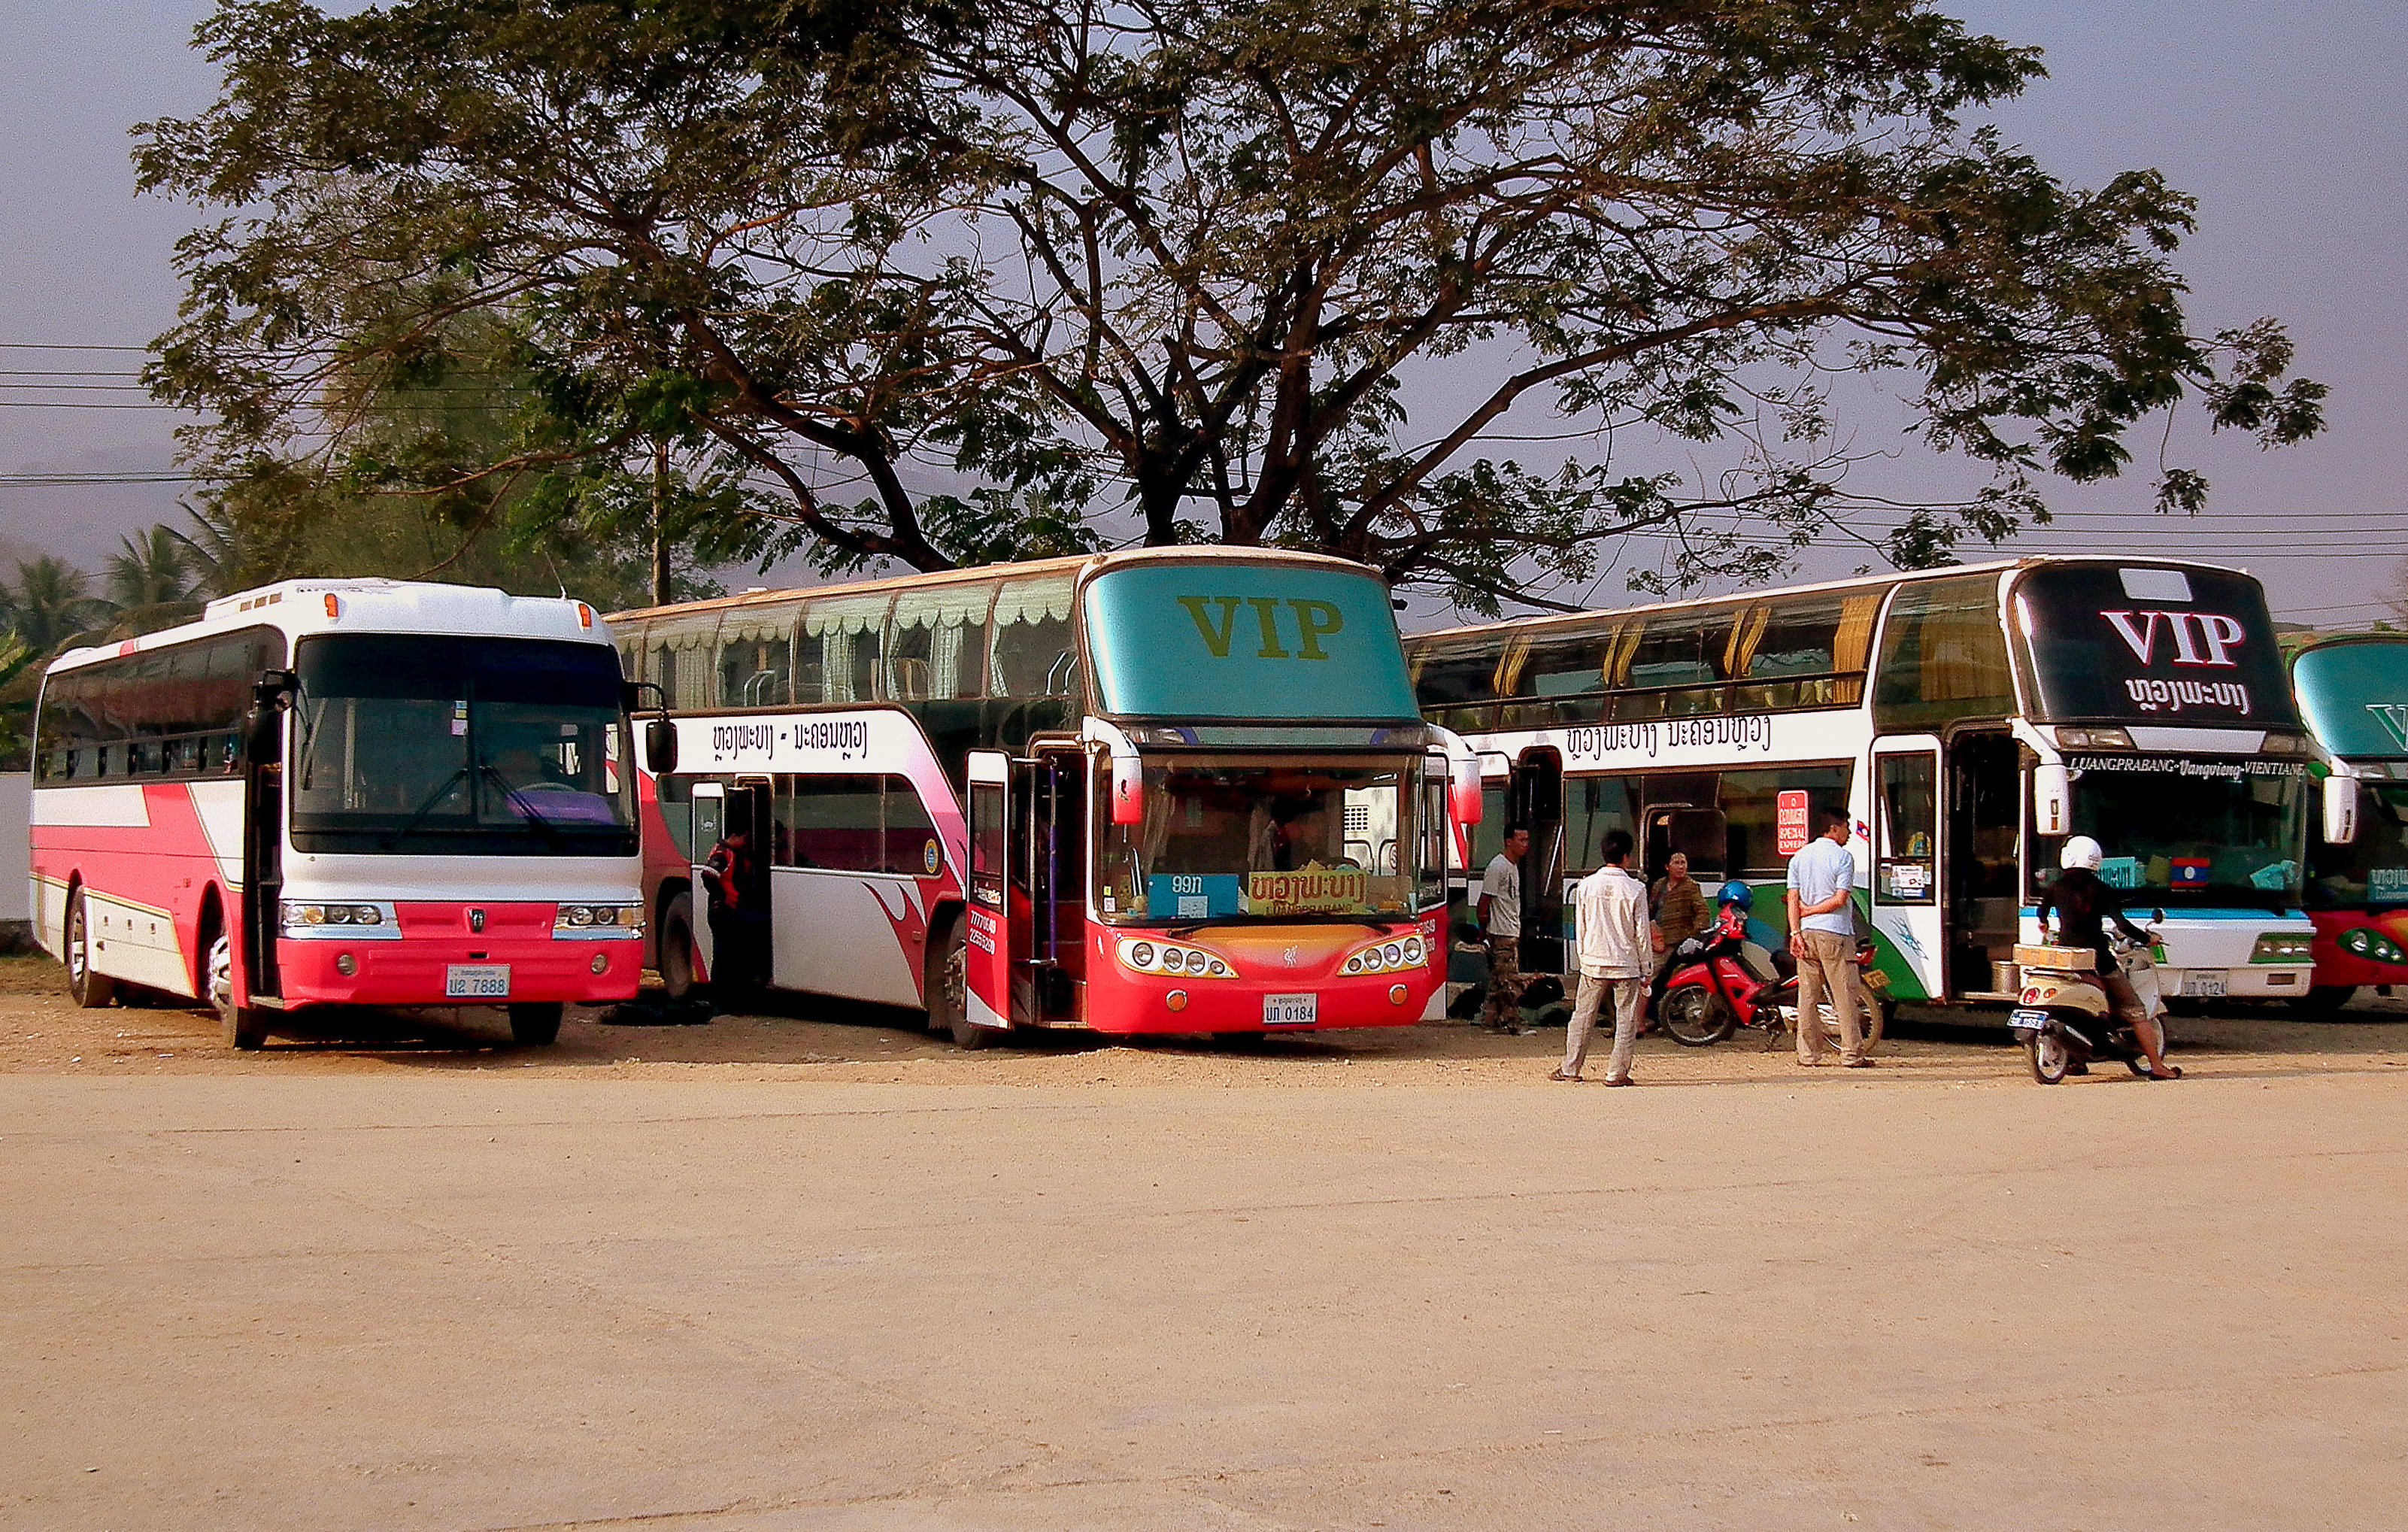 Vip bus in Luang Prabang Bus Station